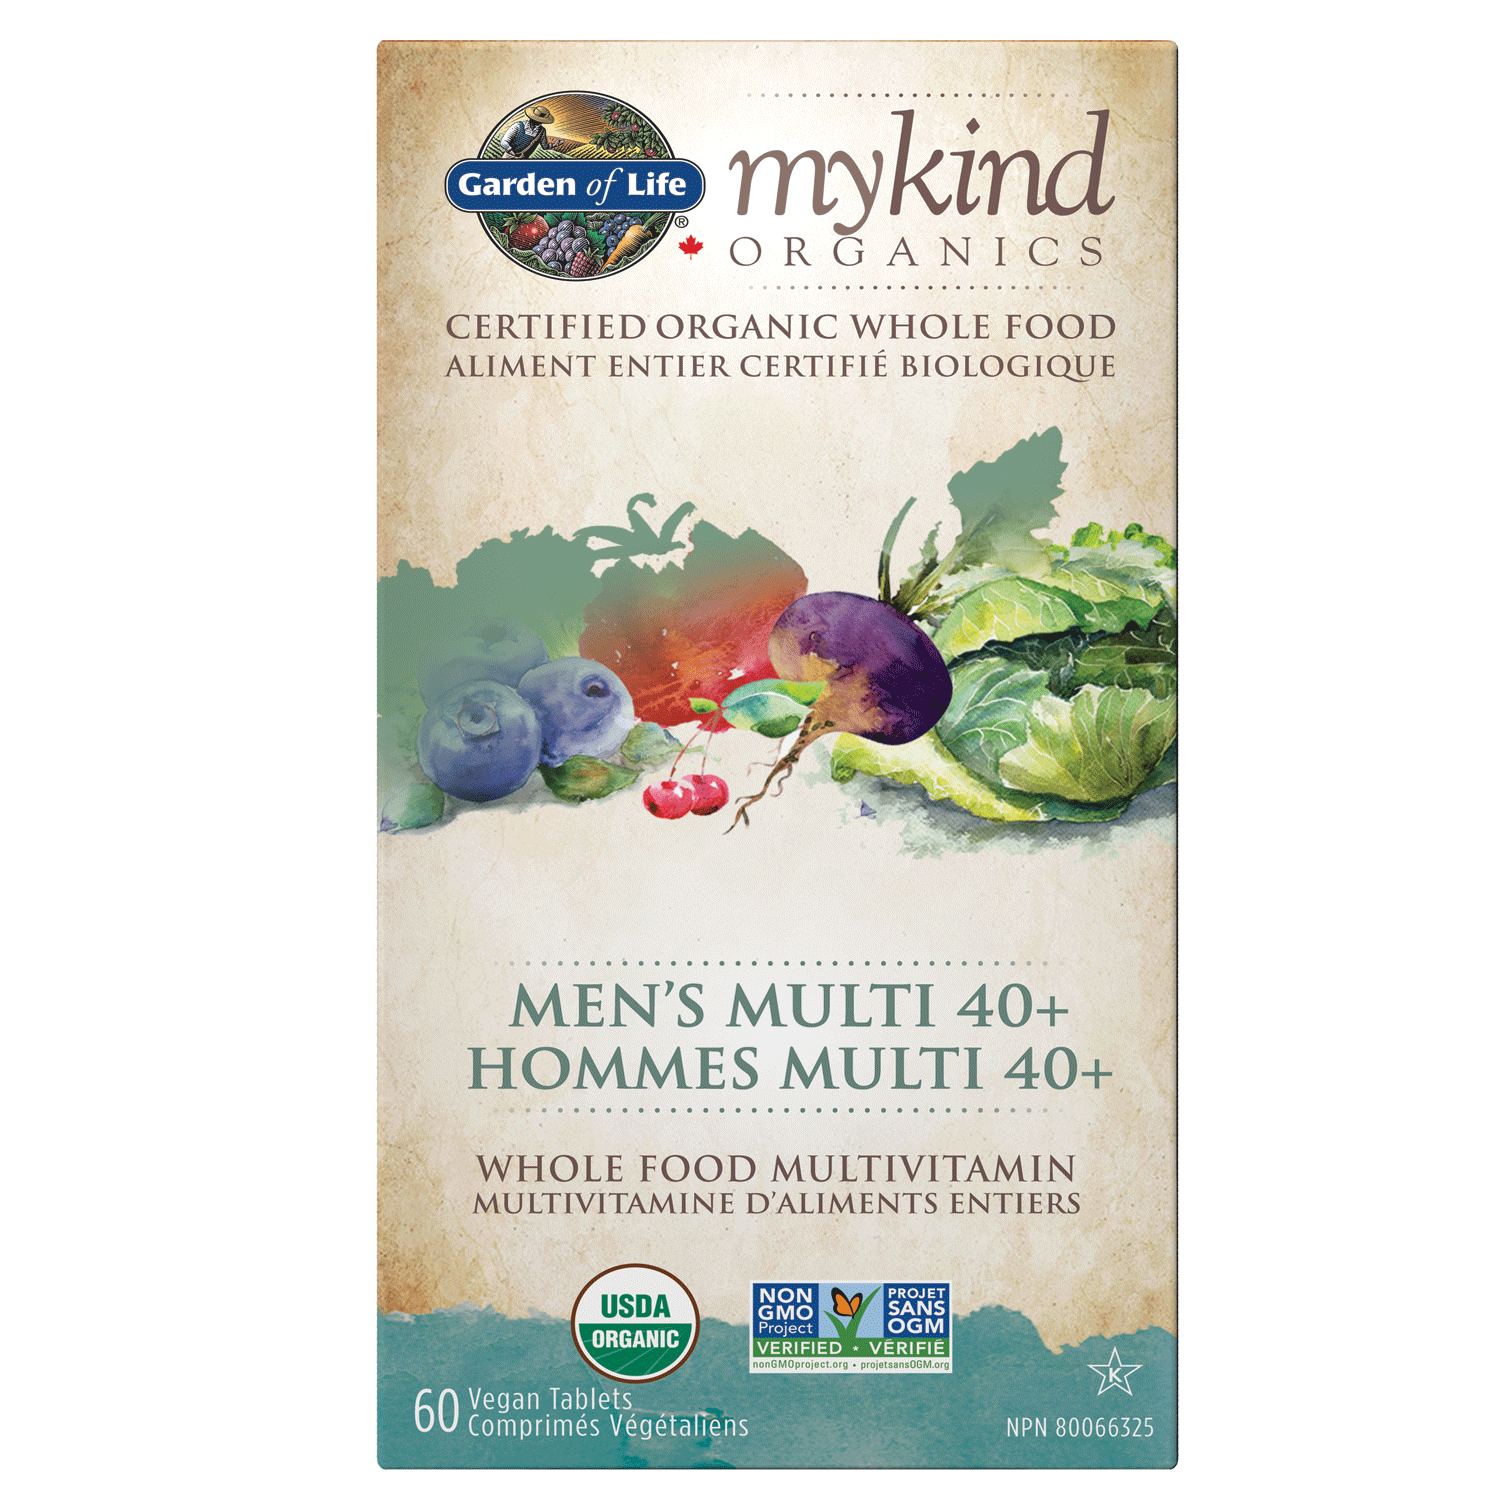 Mykind Organics - Multivitamin - Men’s Multi 40+ 60 Vegan Tablets / g